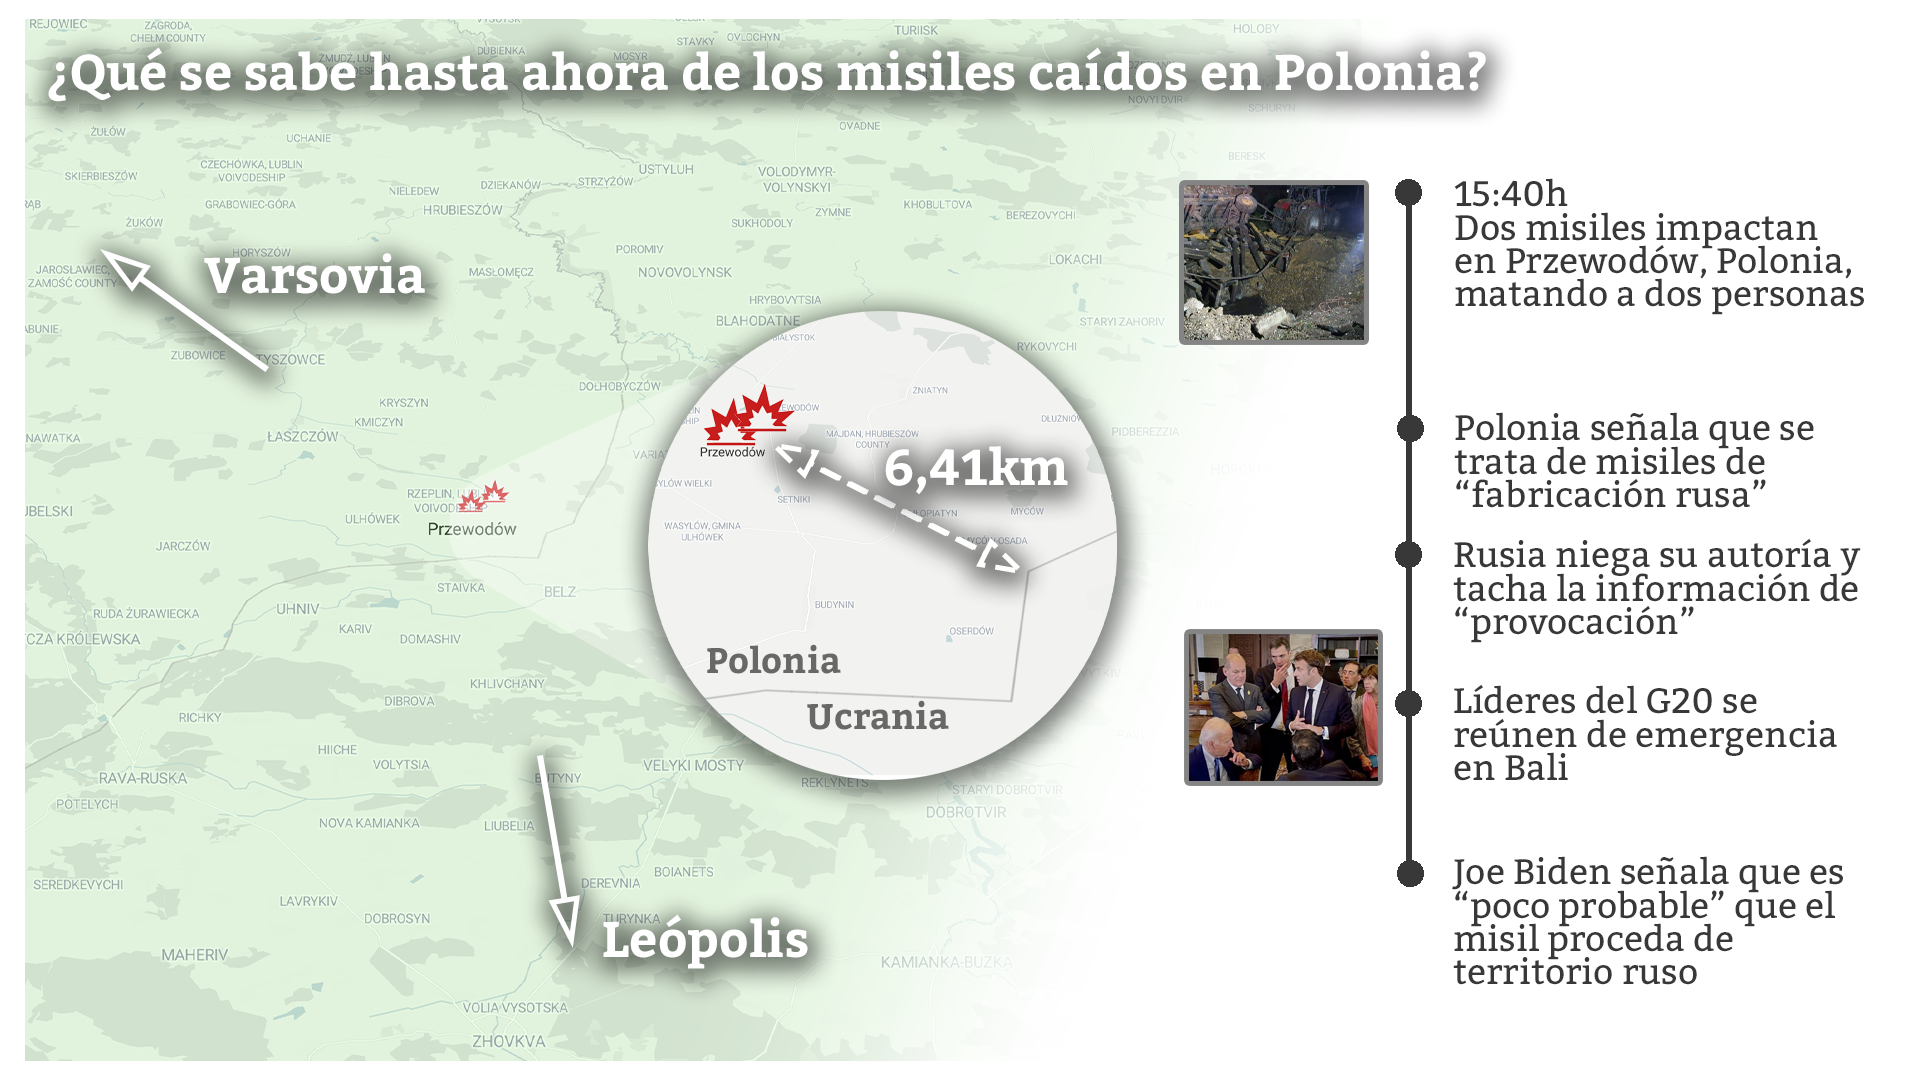 Infografía de la caída de misiles en Polonia